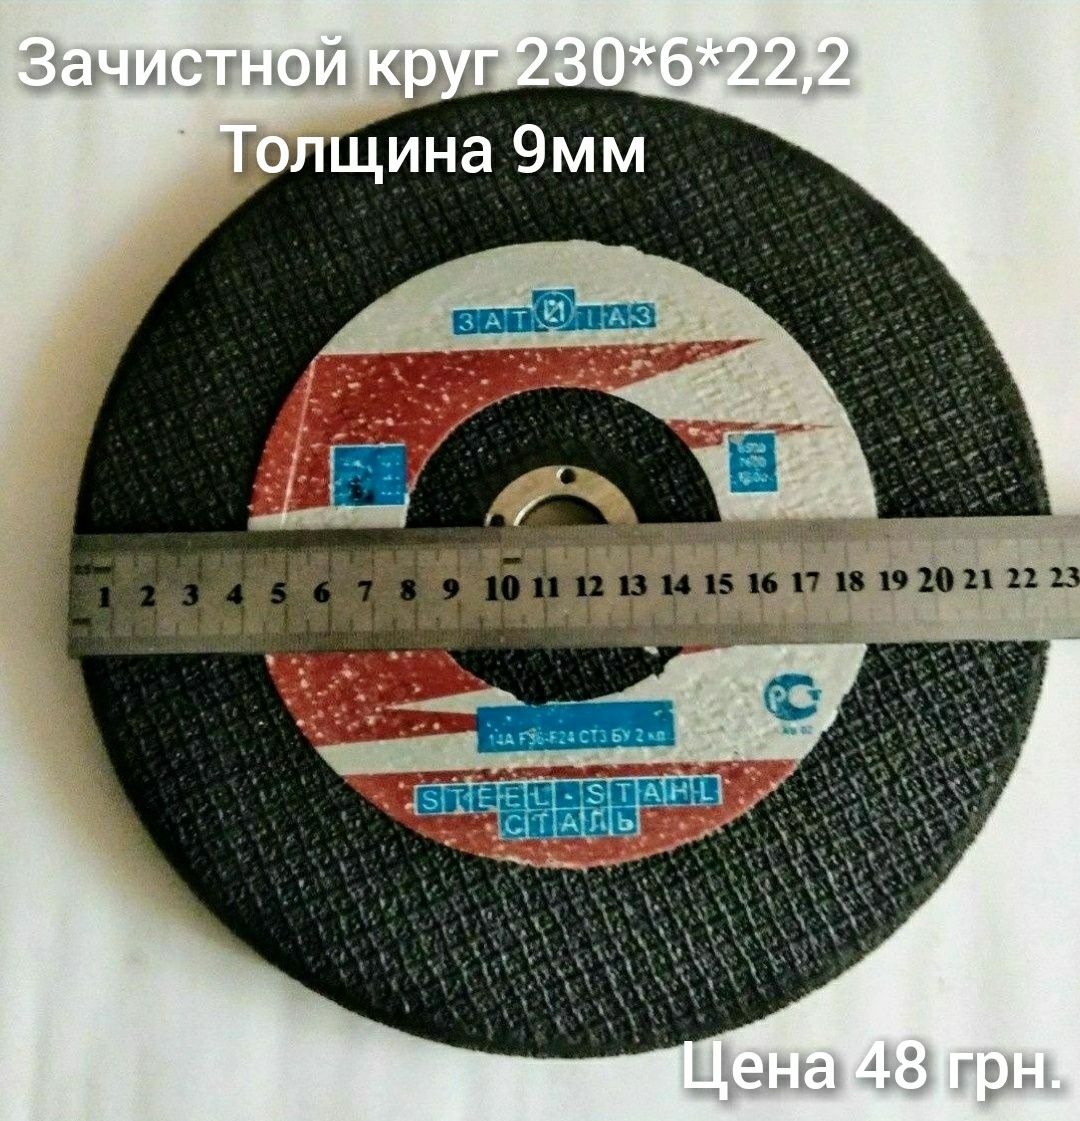 Новые круги произведенные в СССР